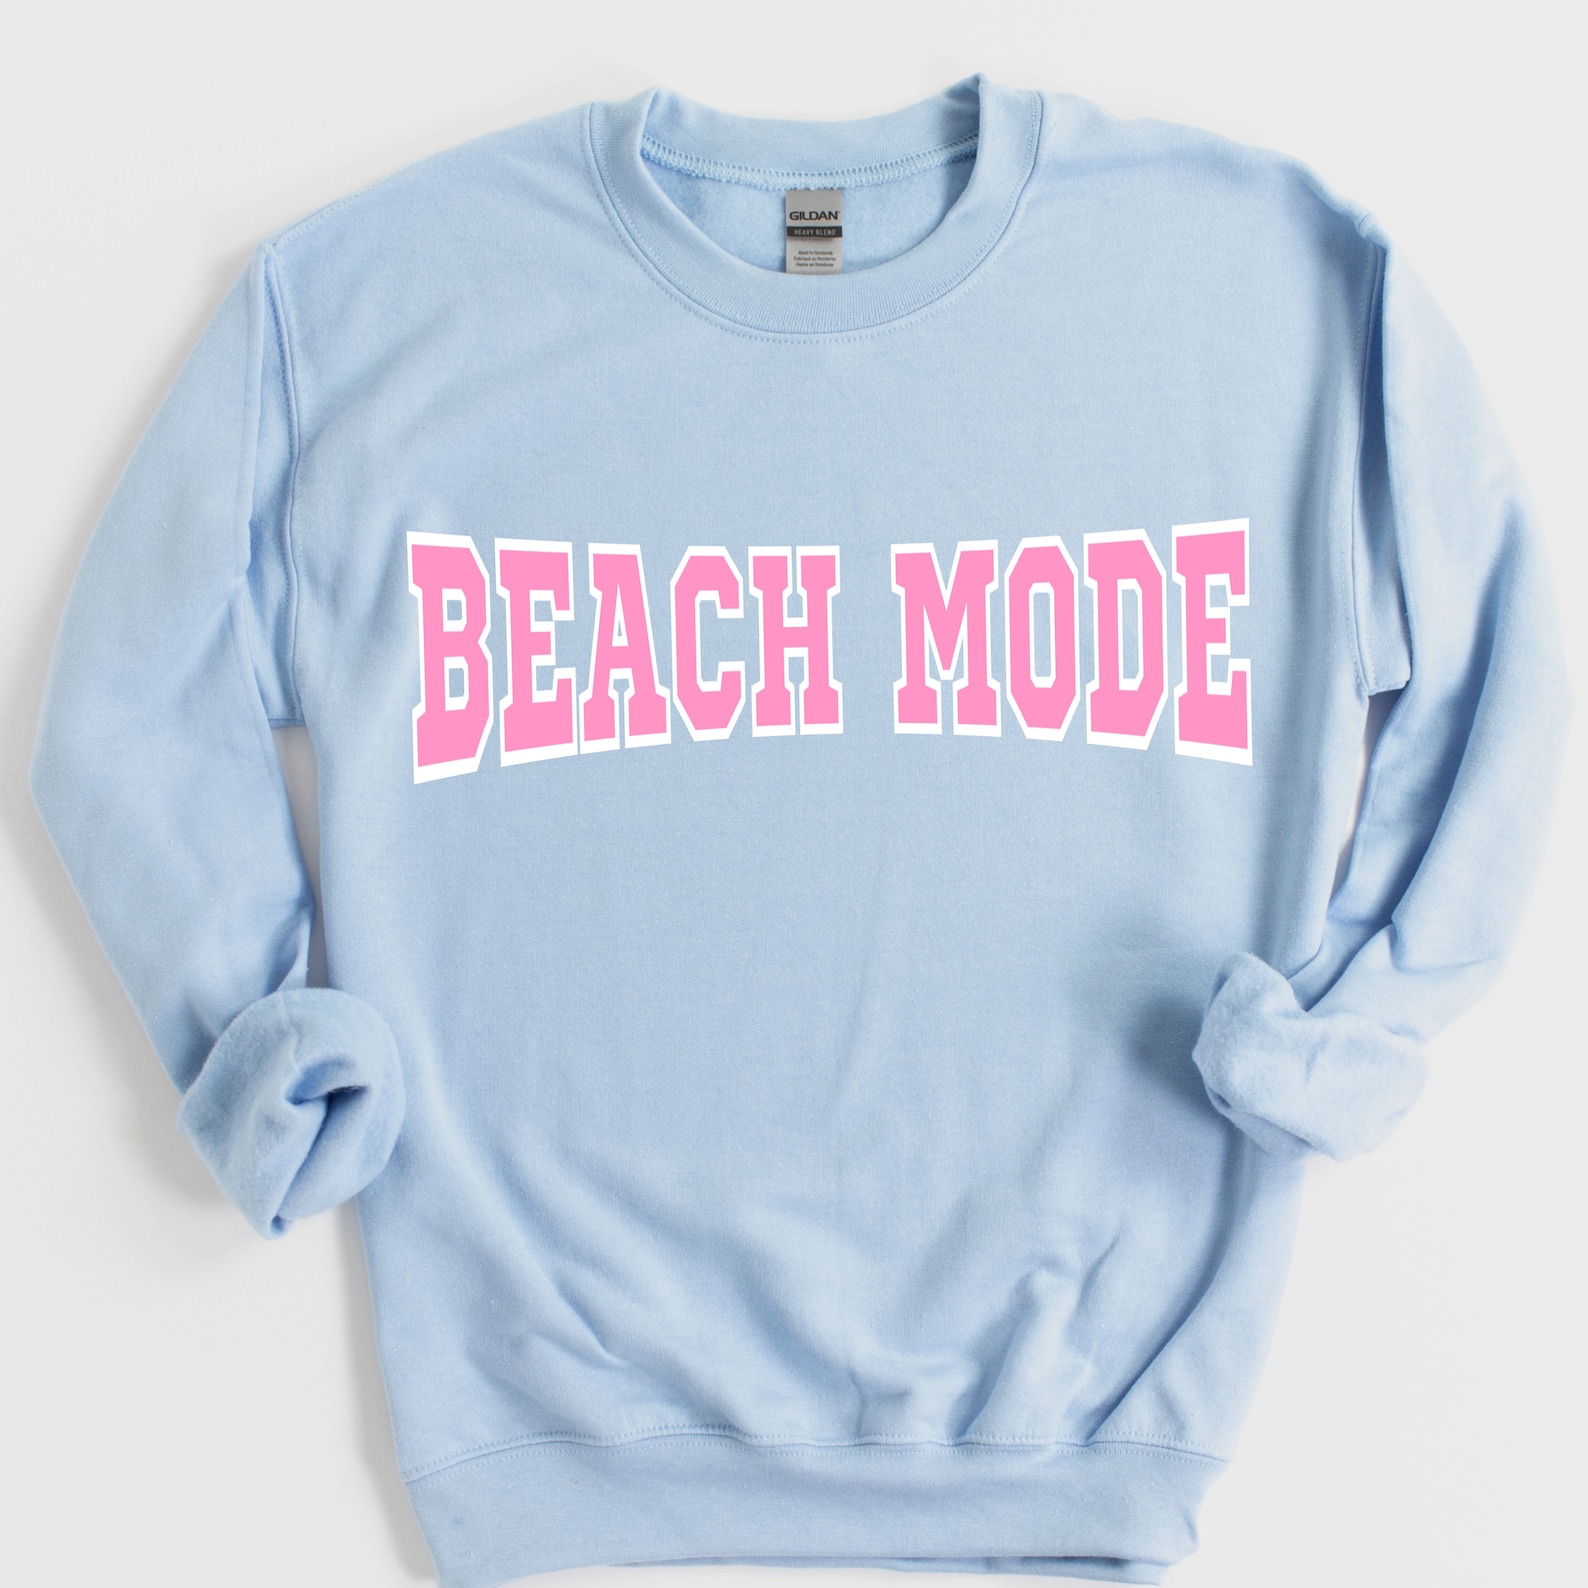 Beach sweatshirt